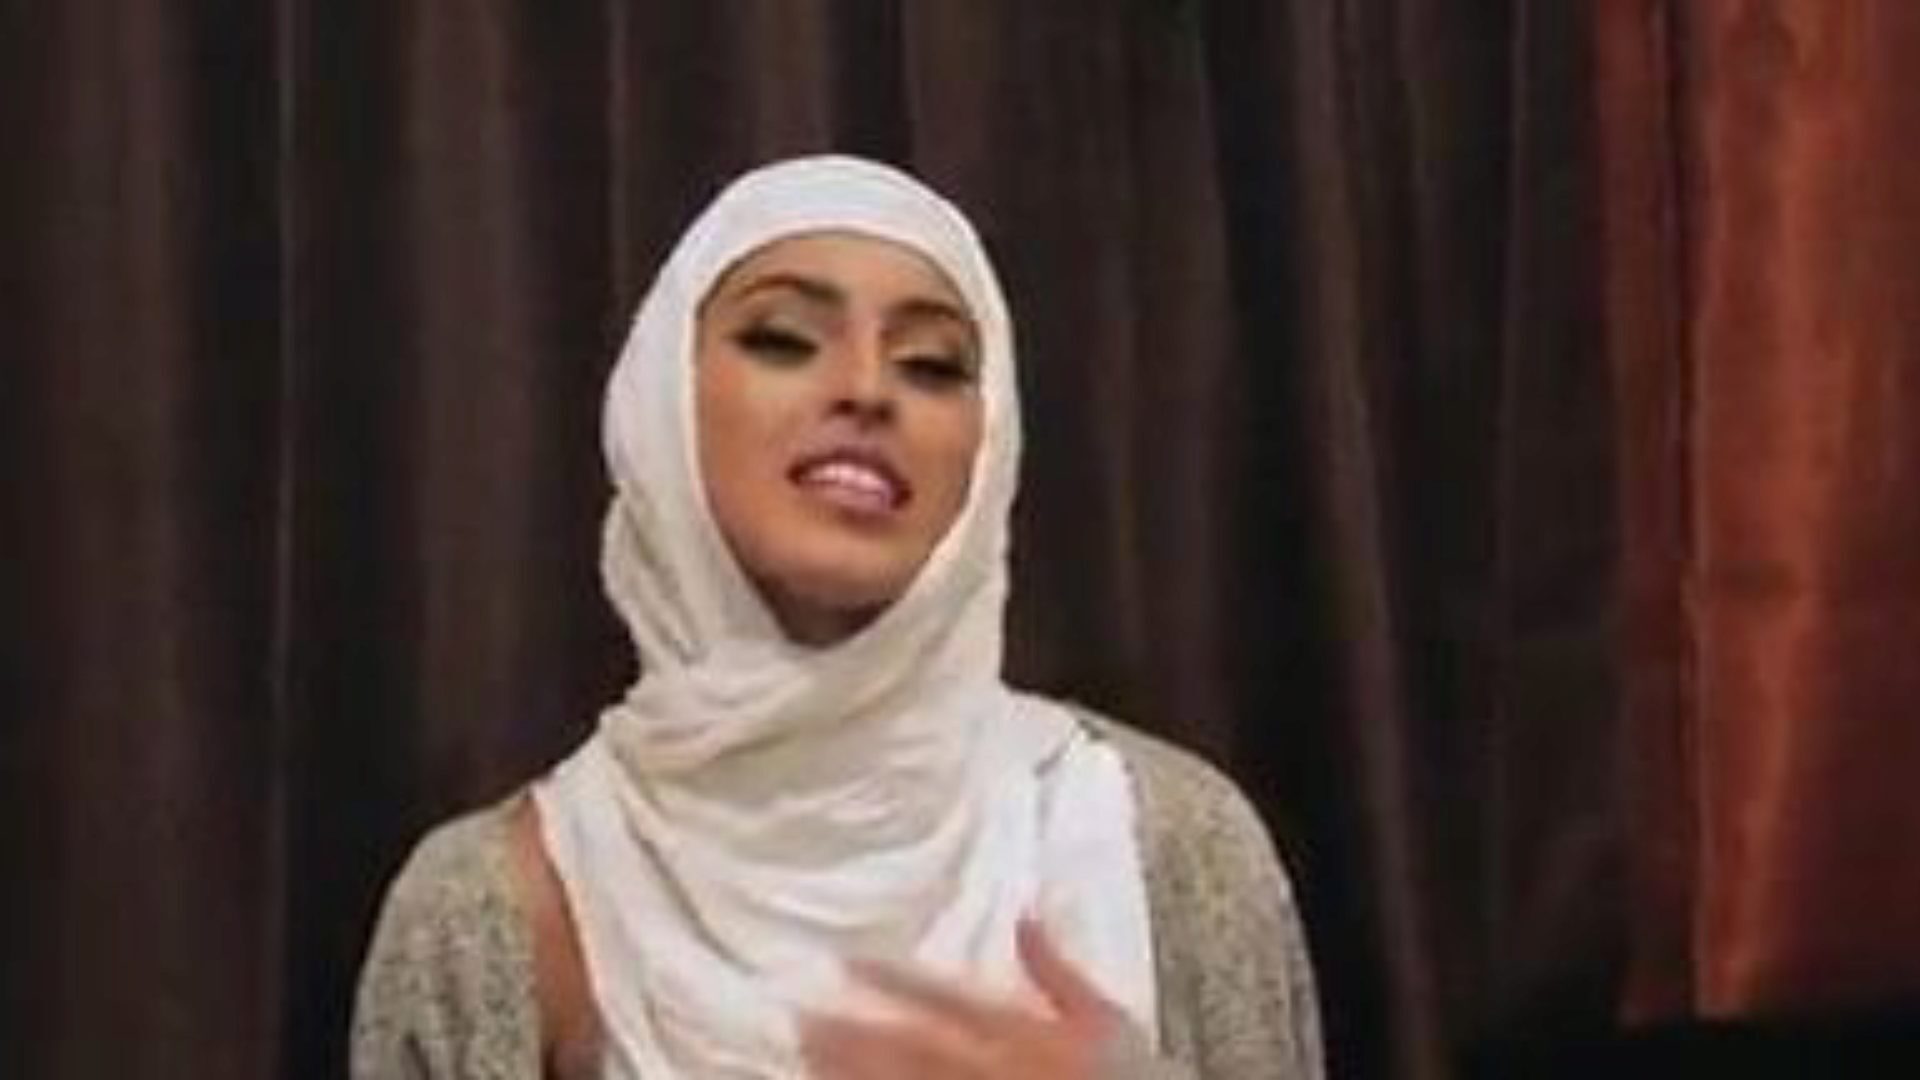 garotas tímidas inexperientes fodem em seus hijabs: pornografia gratuita 5e assista garotas tímidas inexperientes fodendo em seus episódios de hijabs no xhamster - o arquivo final de xnxx grátis para vídeos de pornografia gratuita e bel ami hardcore